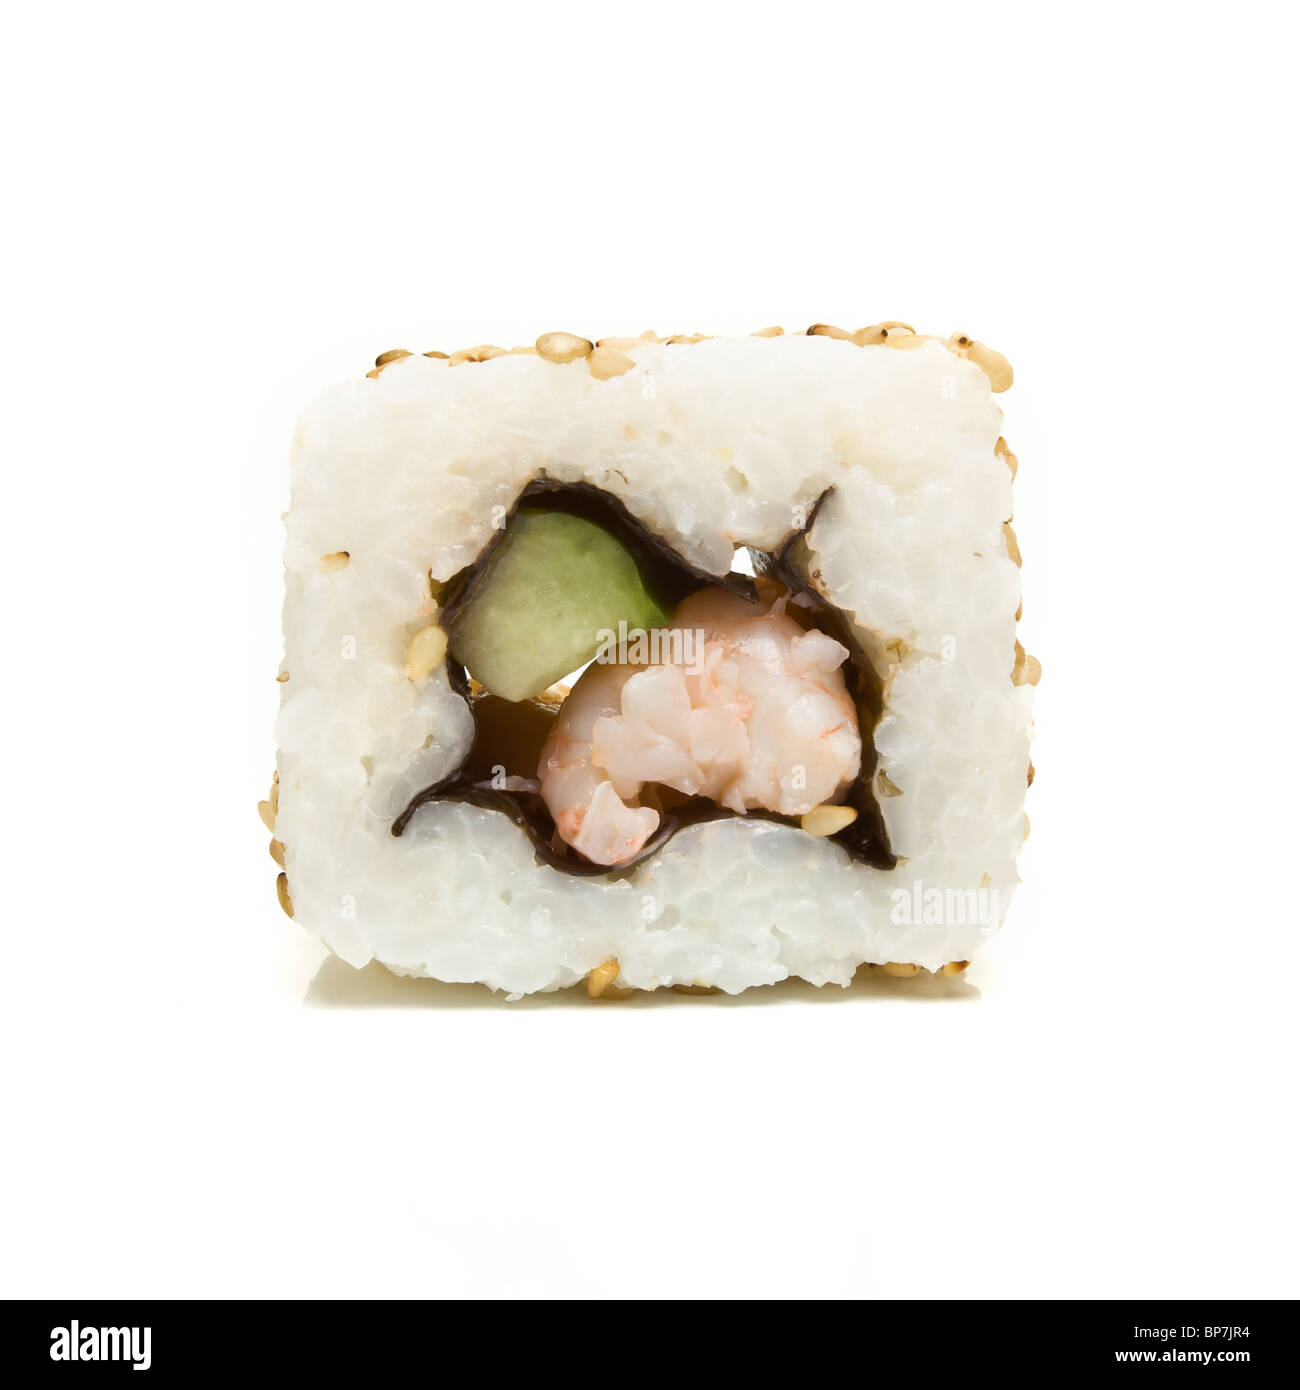 Bloc de sushi de perspective faible contre isolé sur fond blanc. Banque D'Images